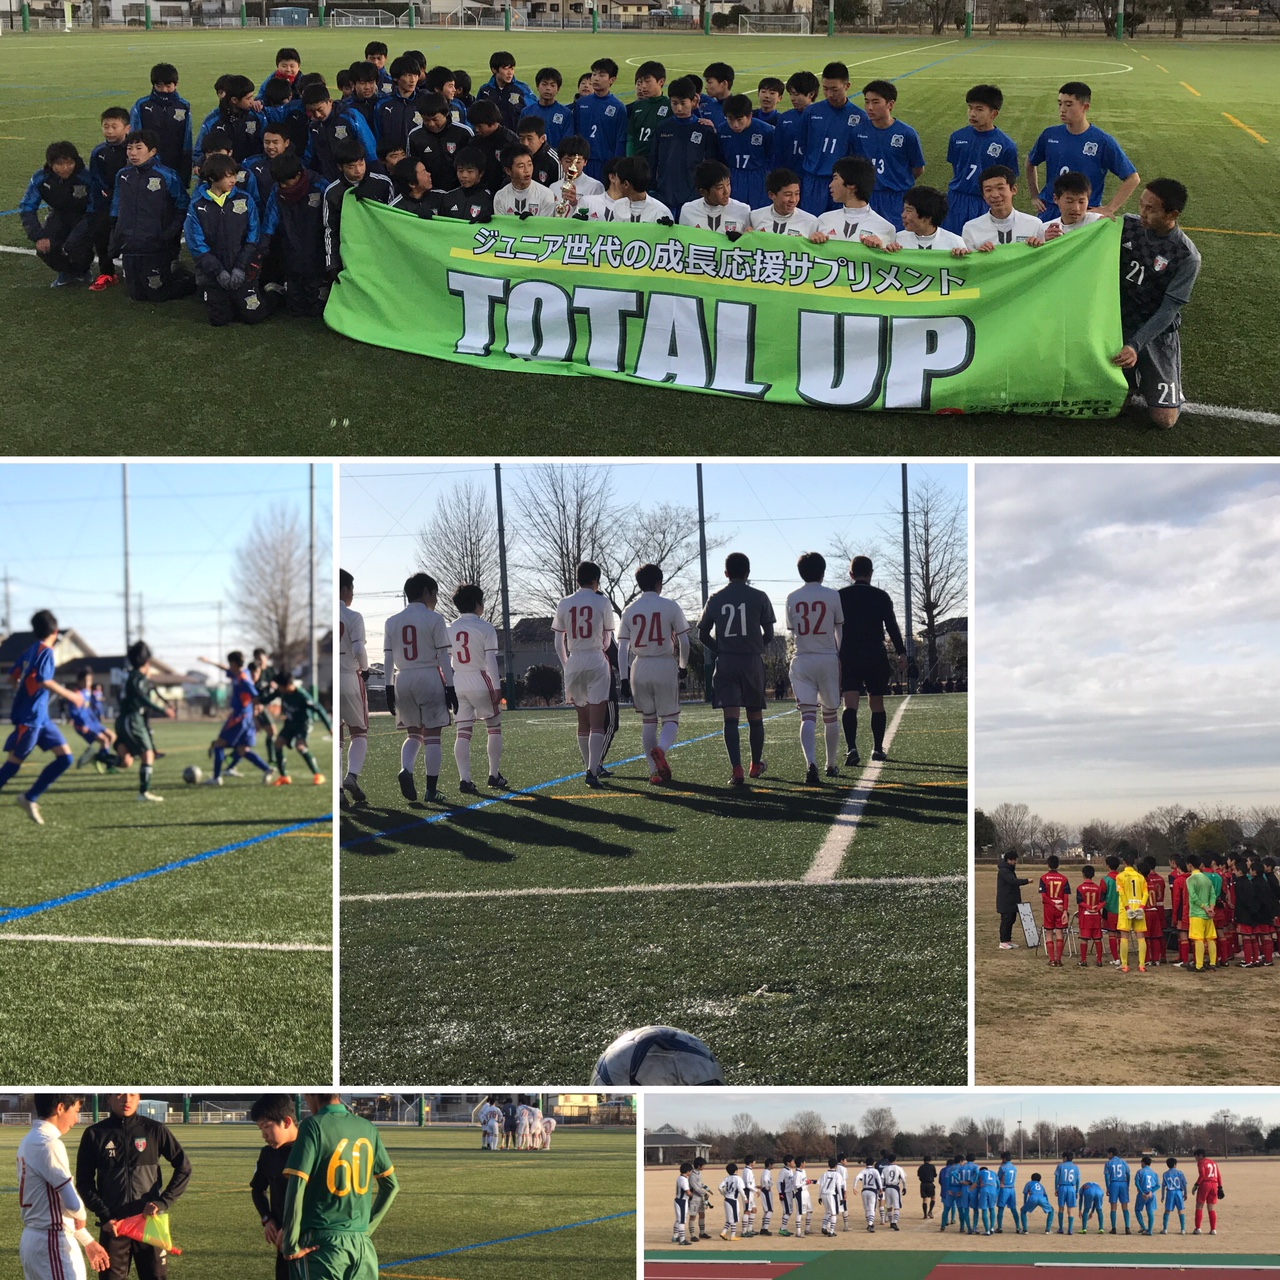 18ジャパンジュニアユースサッカー大会 トータルアップカップ In Kumagaya 公式